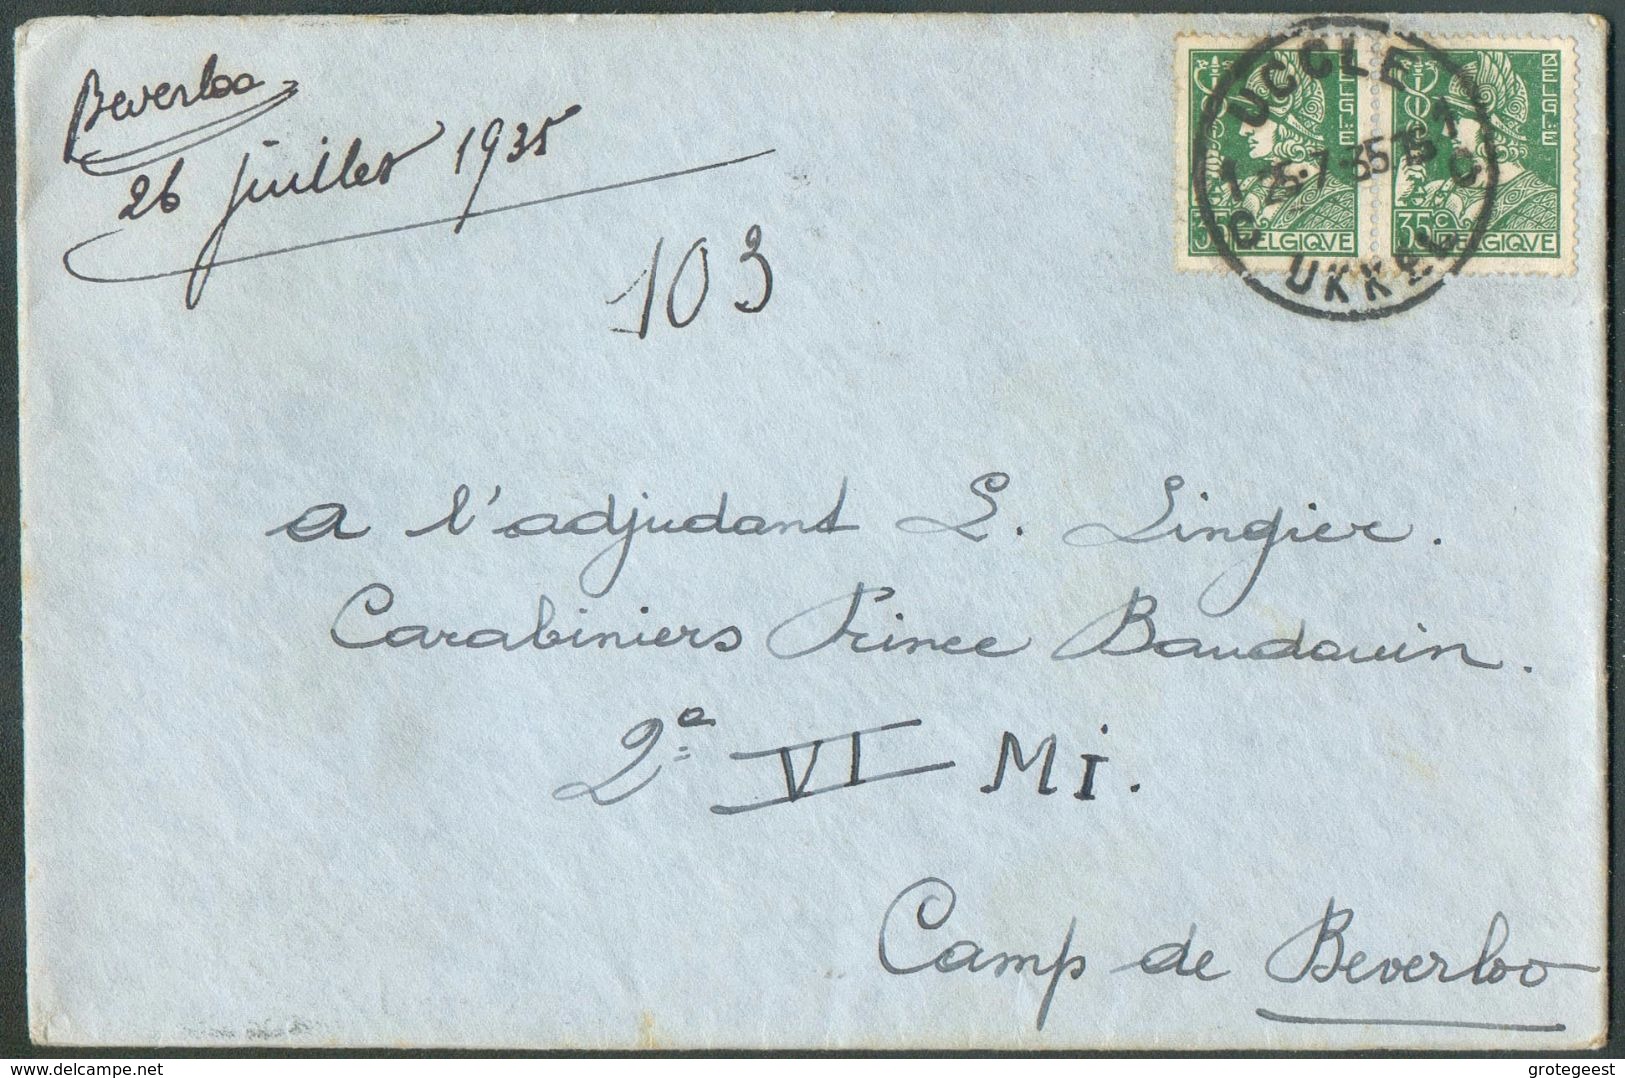 35 Cent. MERCURE (x2)  Obl. Sc DeUCCLE  Sur Lettre Du 25-7-1935 Vers Adjudant Lingier, Carabiniers Prince Baudouin 2è Au - 1932 Ceres E Mercurio